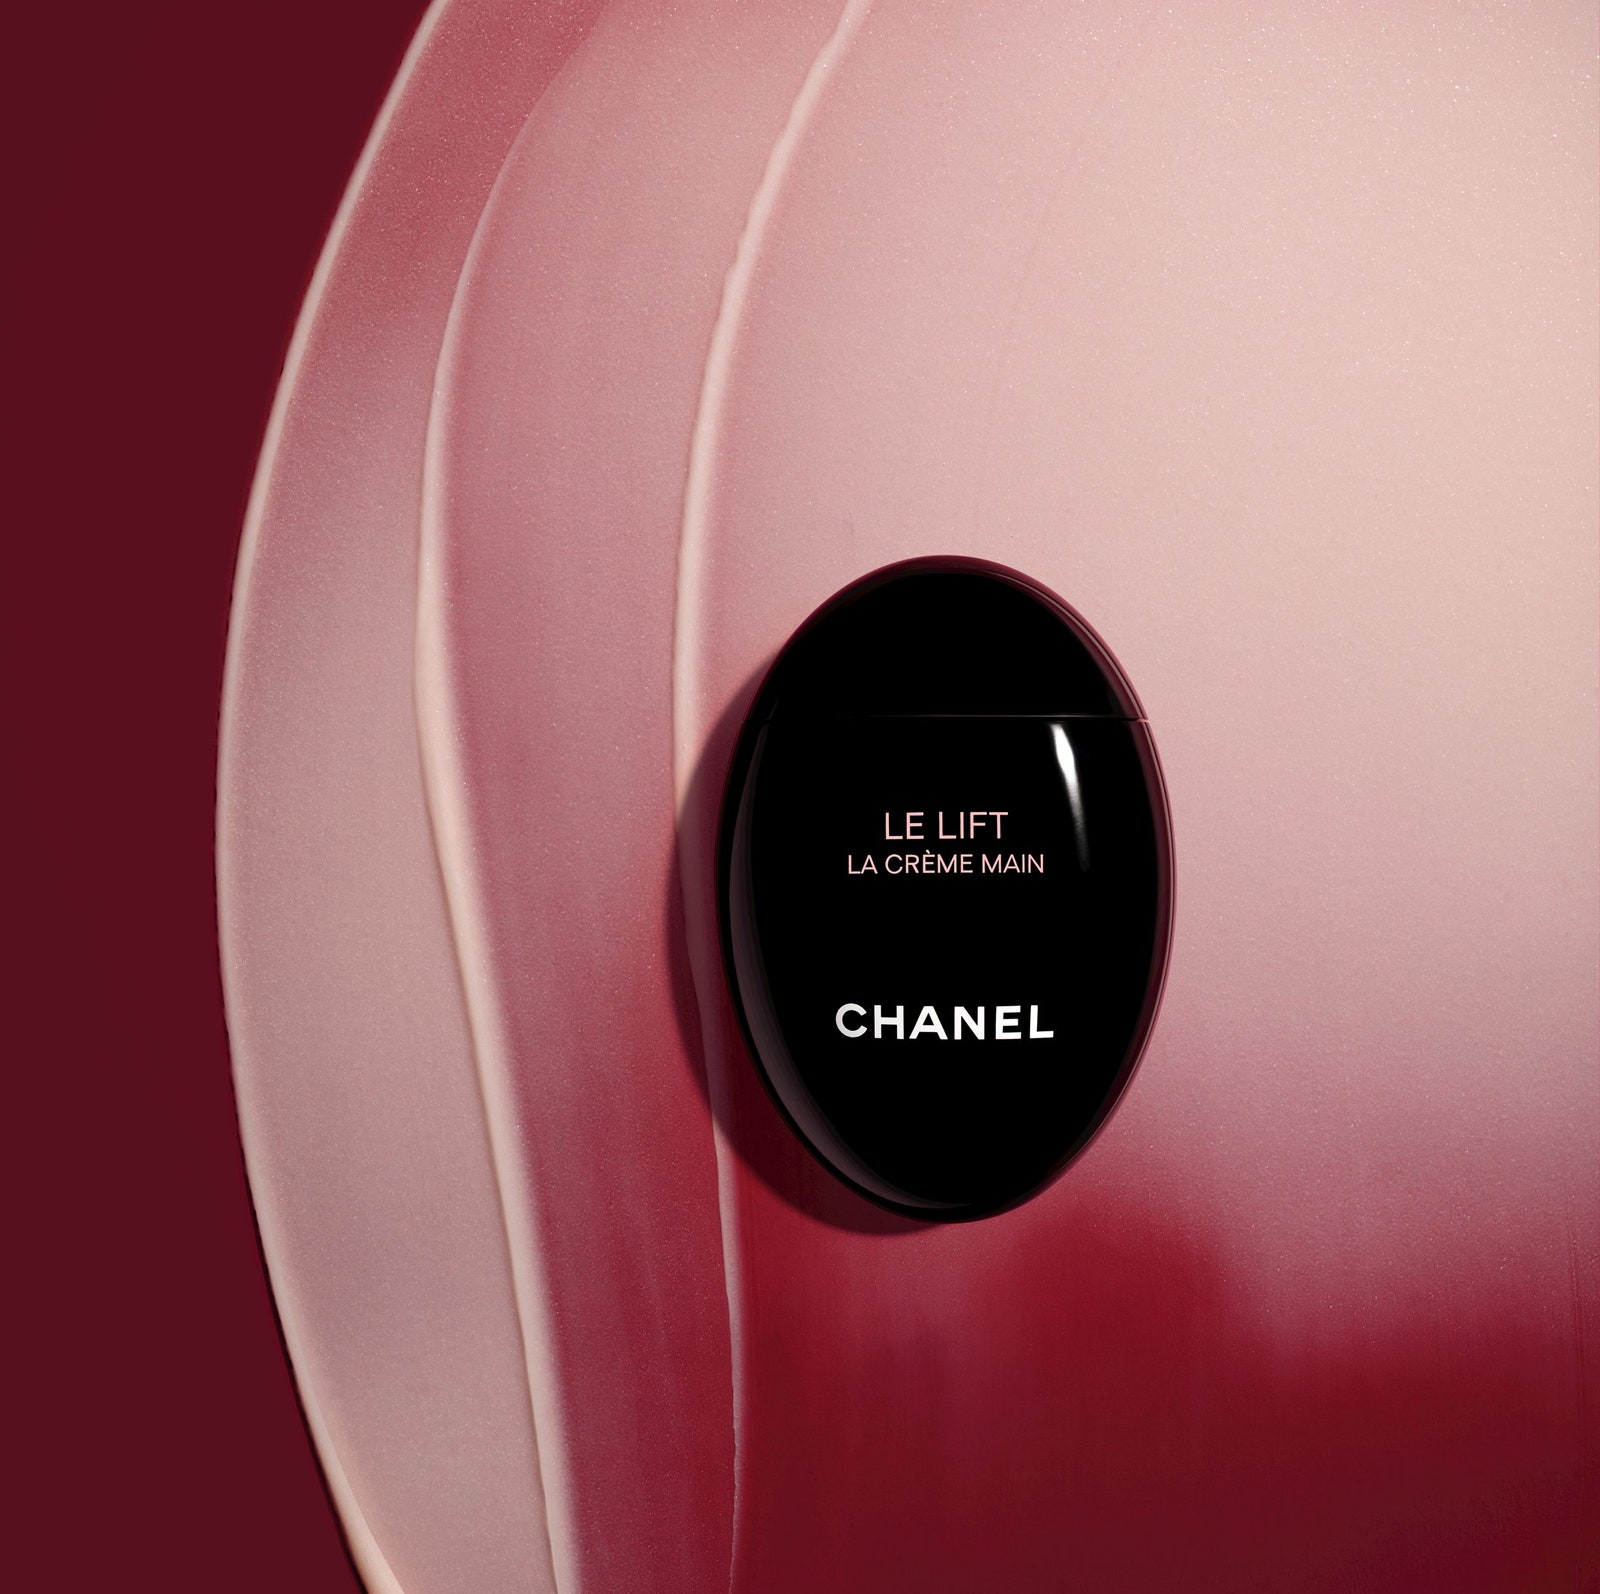 Объекты желания крем для рук и сыворотка для лица и шеи Le Lift от Chanel